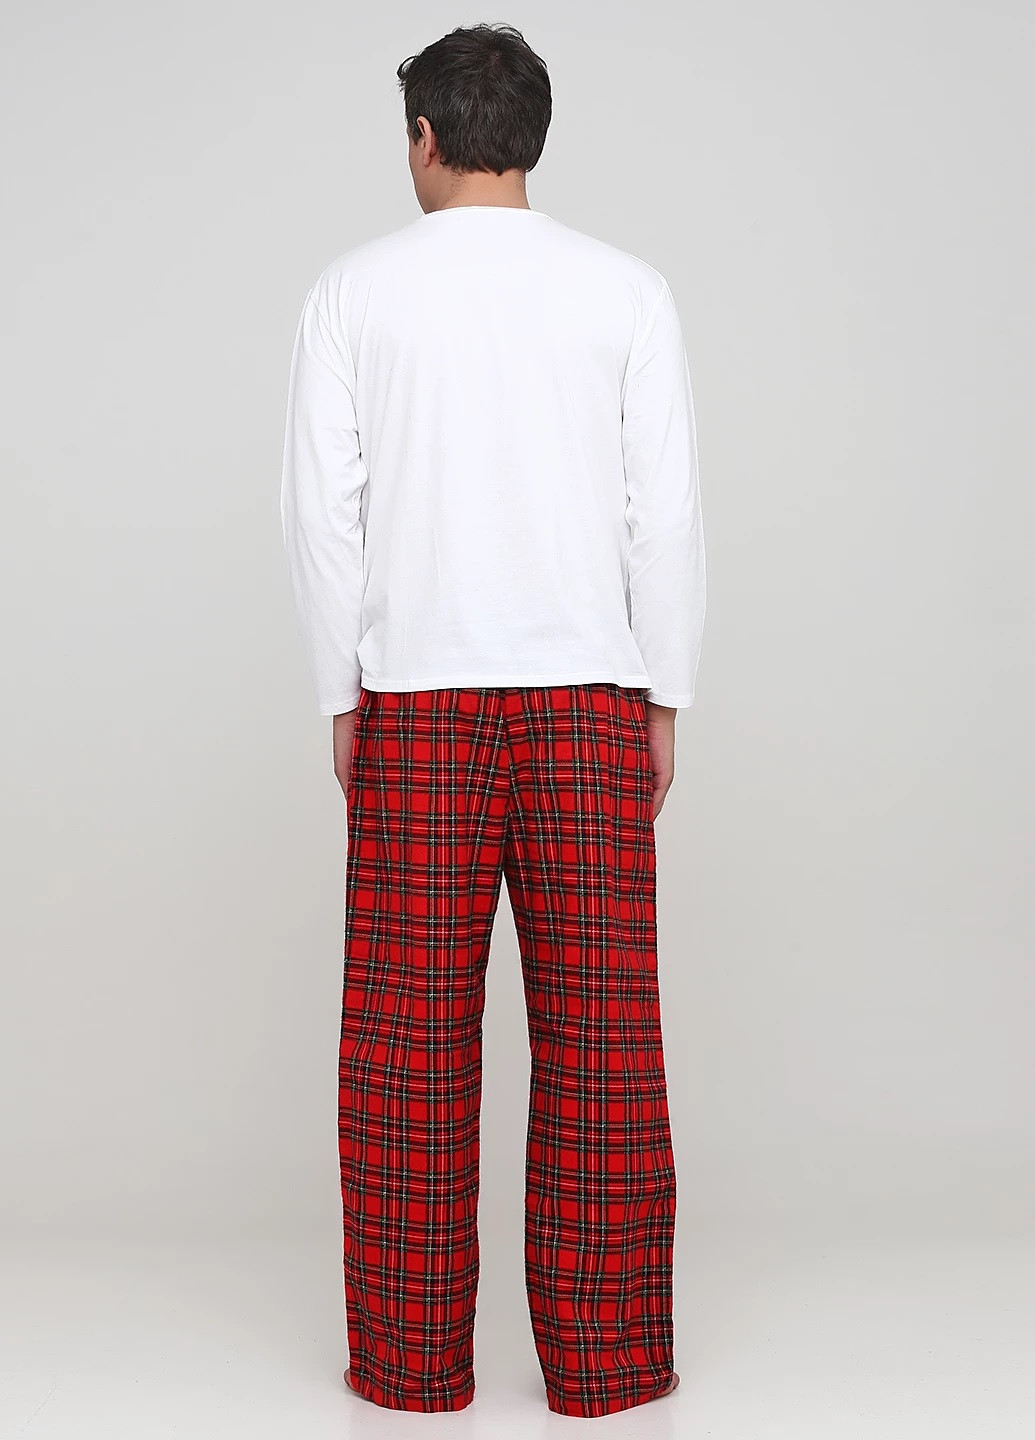 Пижама (лонгслив, брюки) Signature Collection лонгслив + брюки новогодняя красная домашняя фланель, хлопок